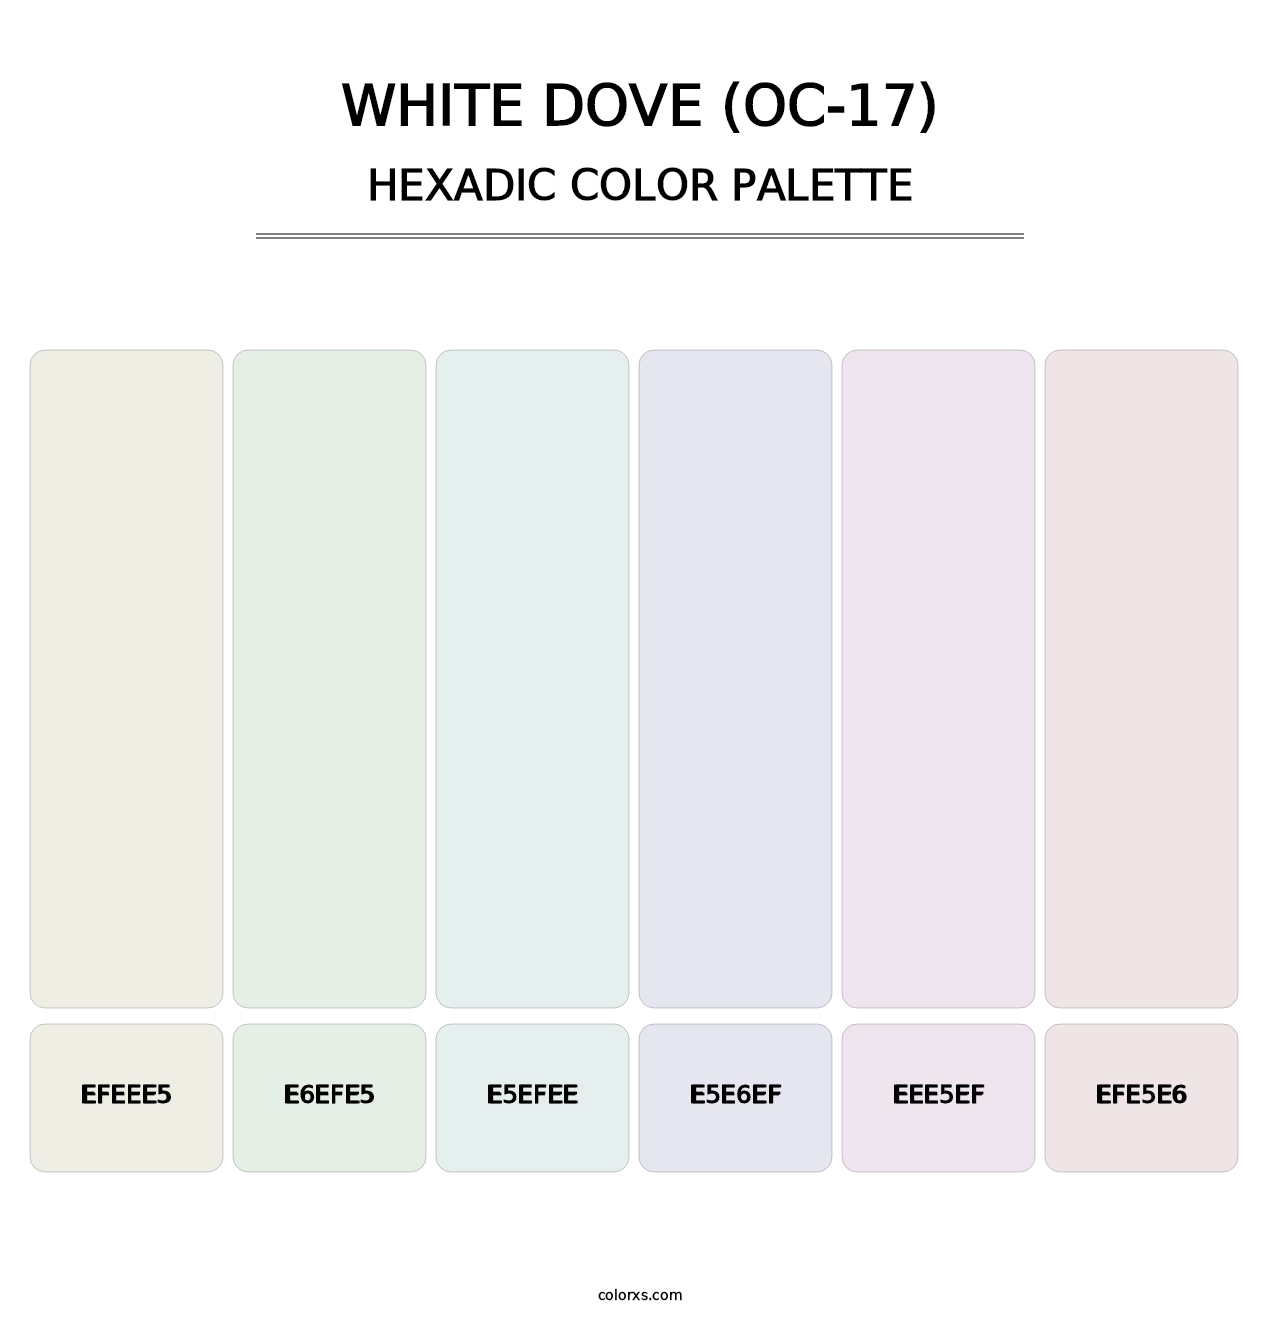 White Dove (OC-17) - Hexadic Color Palette